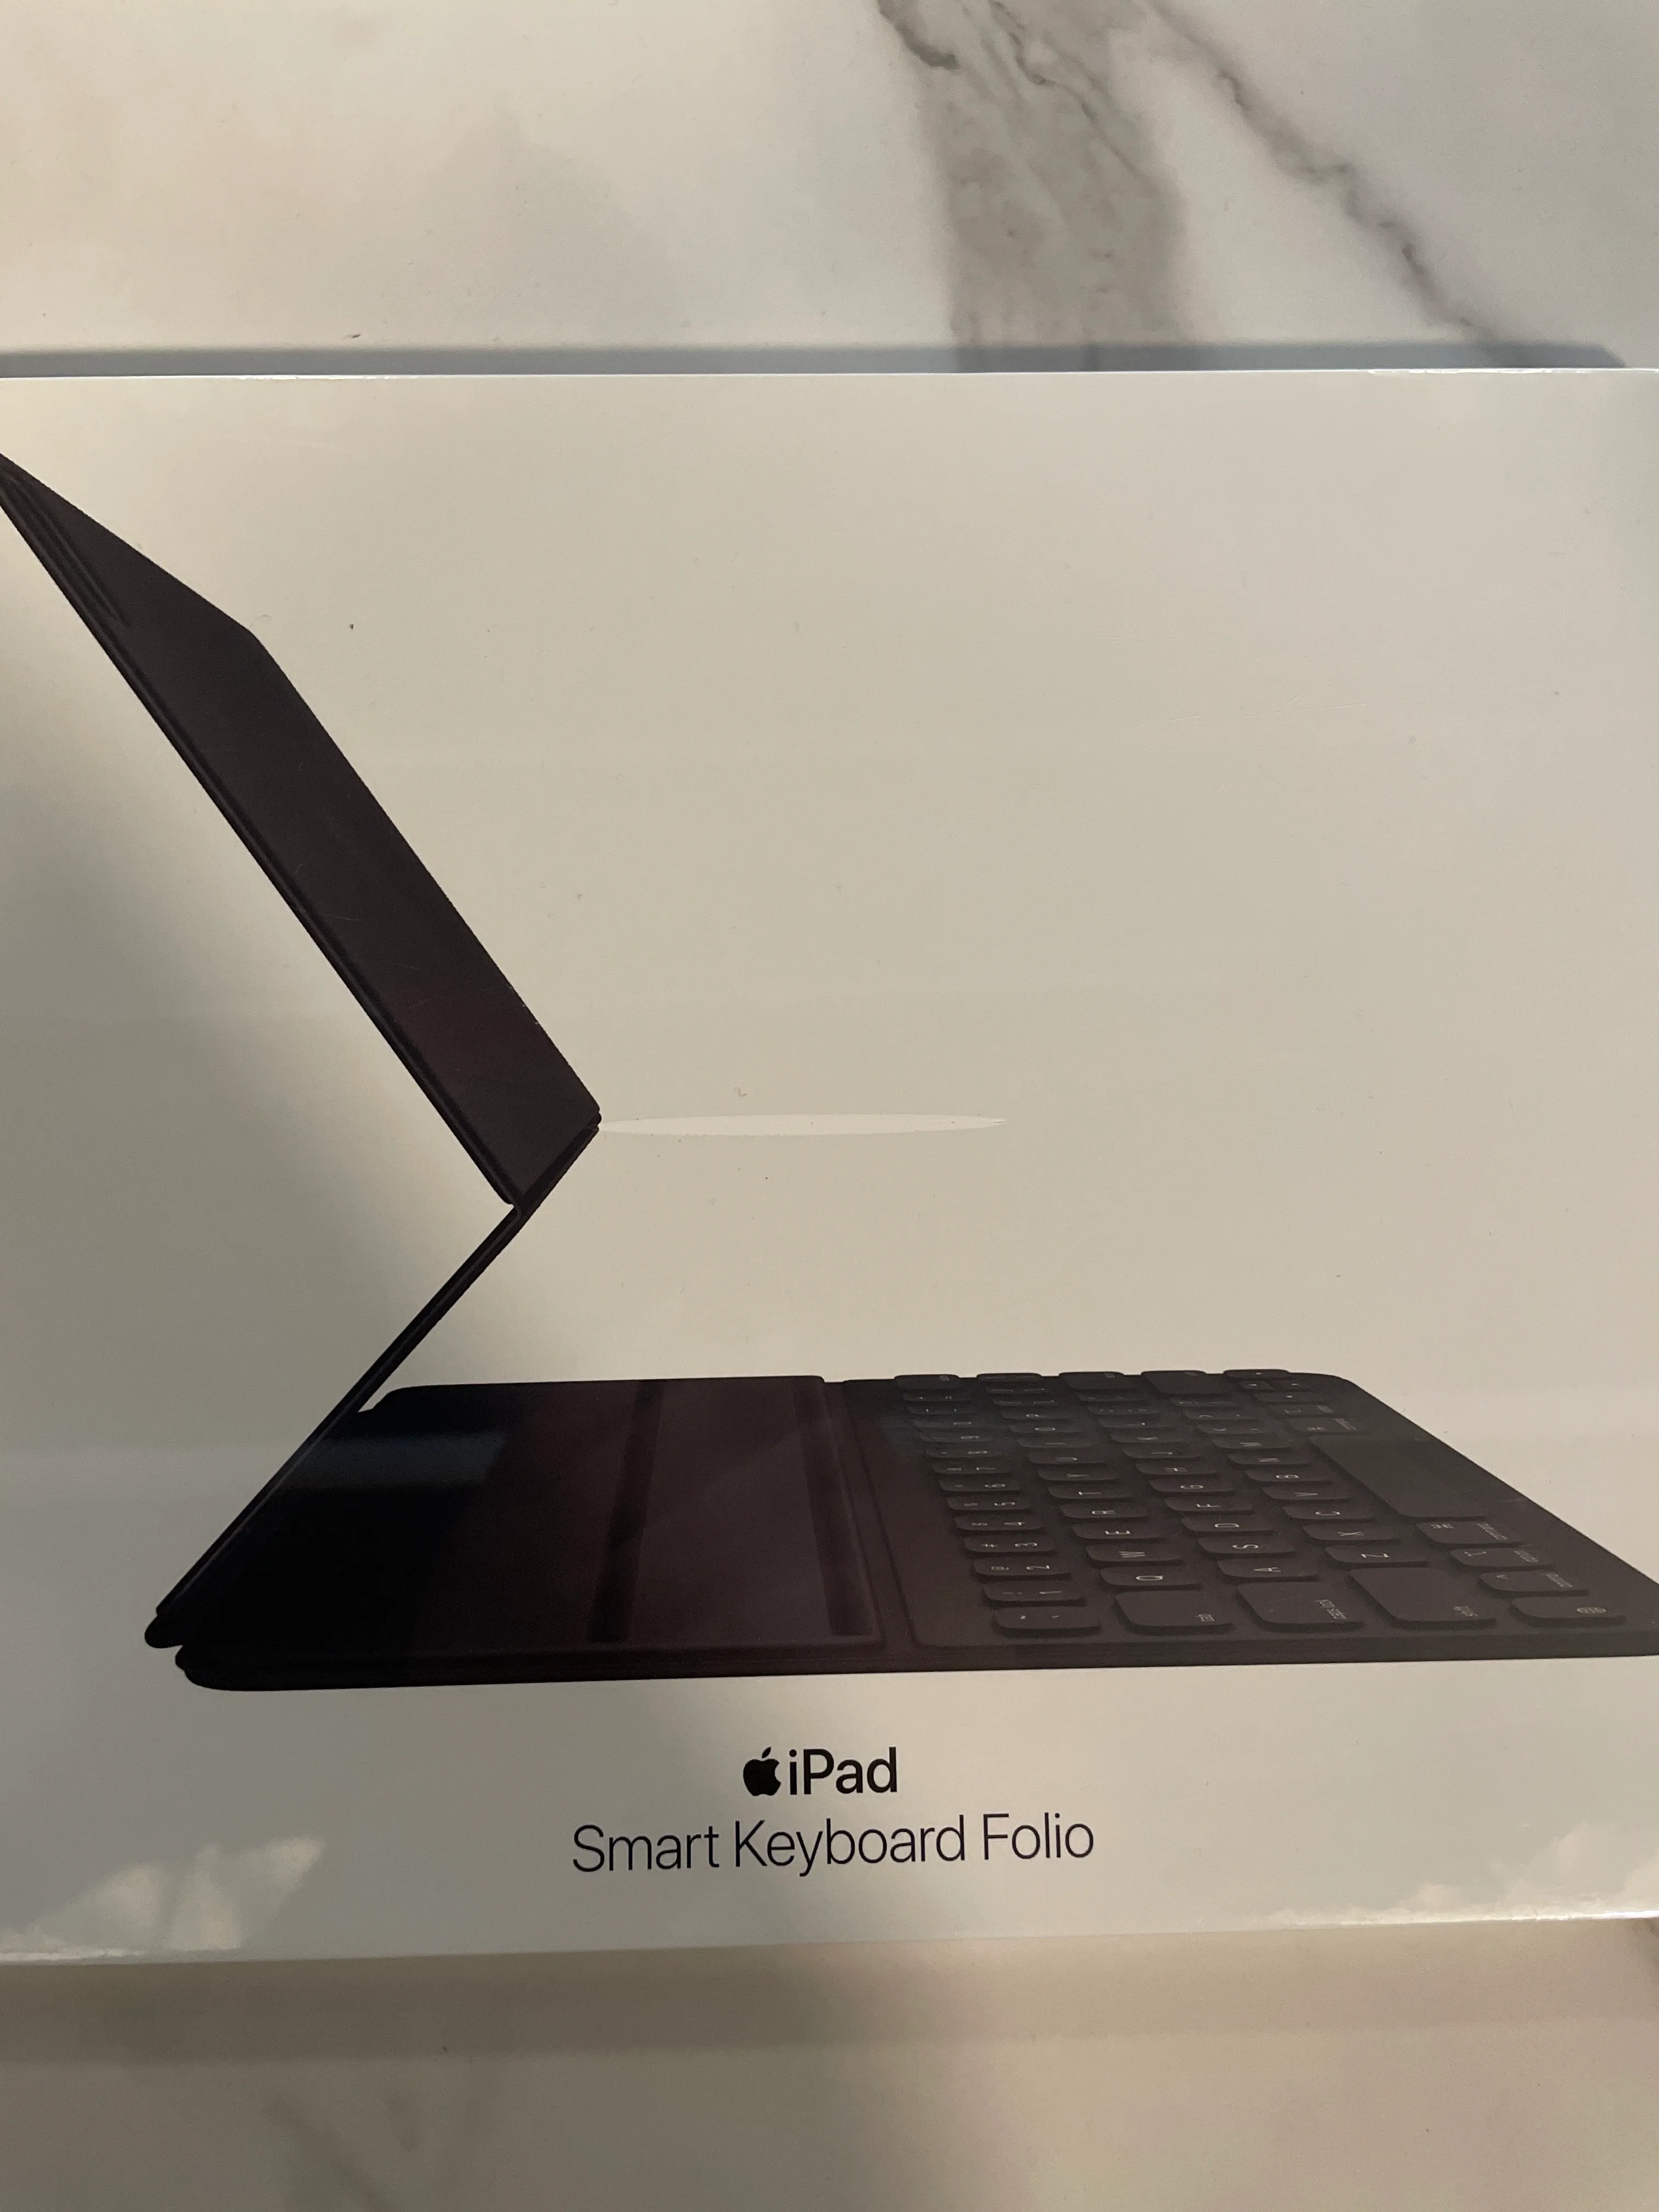 Smart Keyboard Folio for iPad media